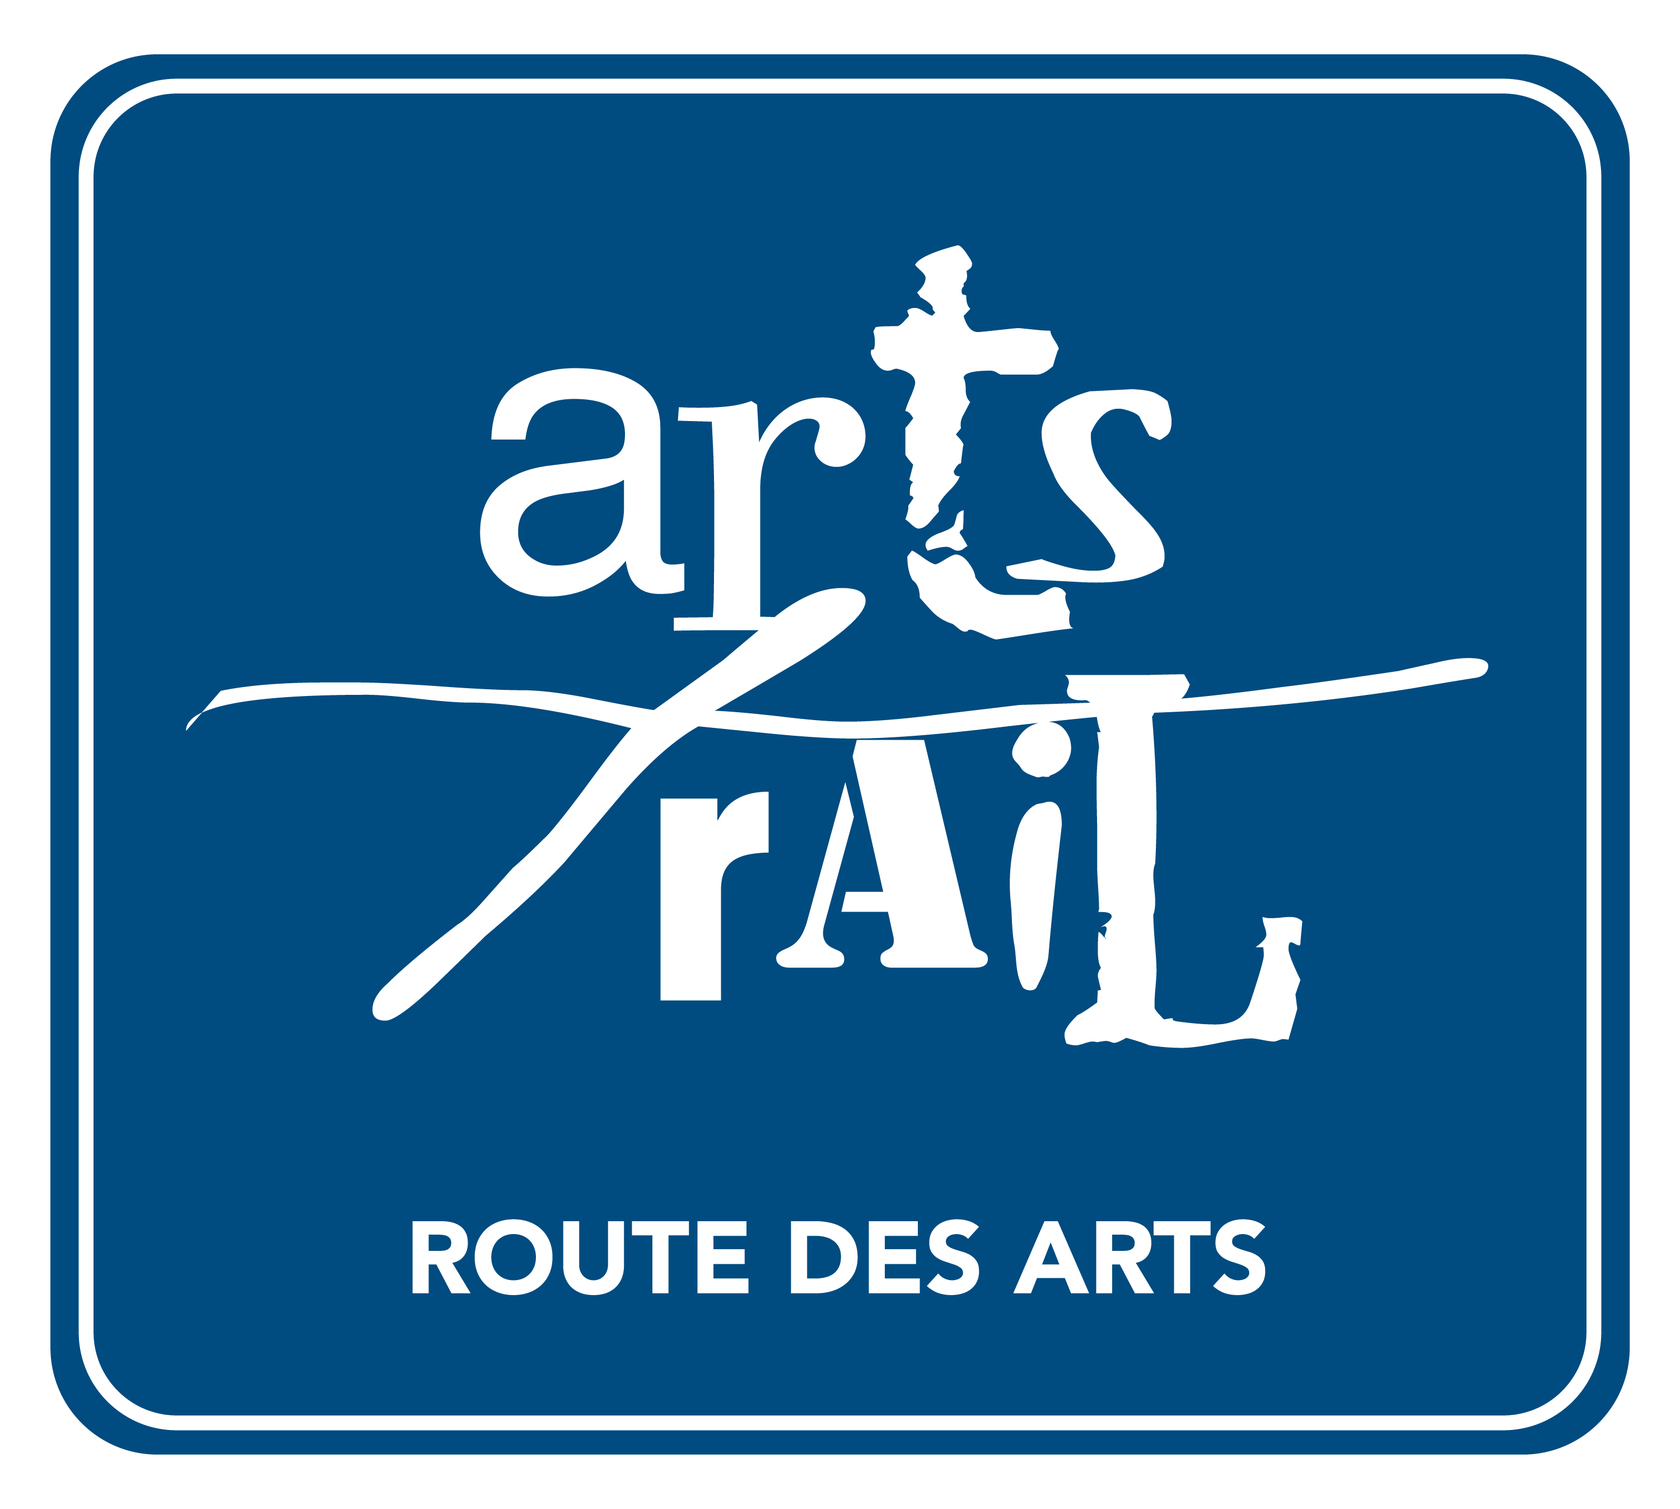 Arts Trail